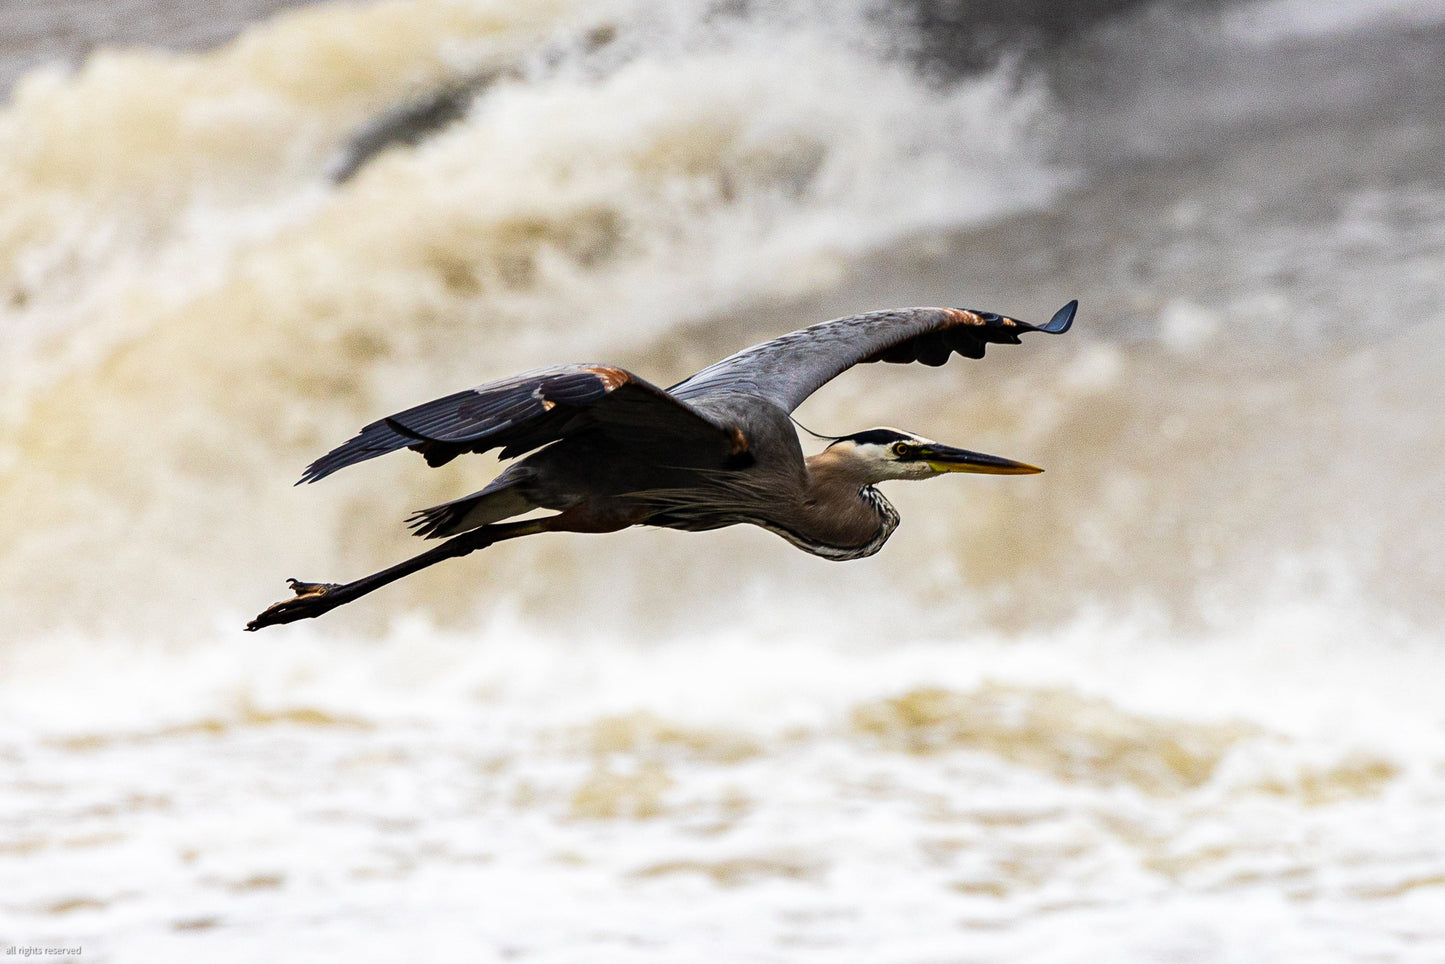 Blue Heron In Flight Over Water